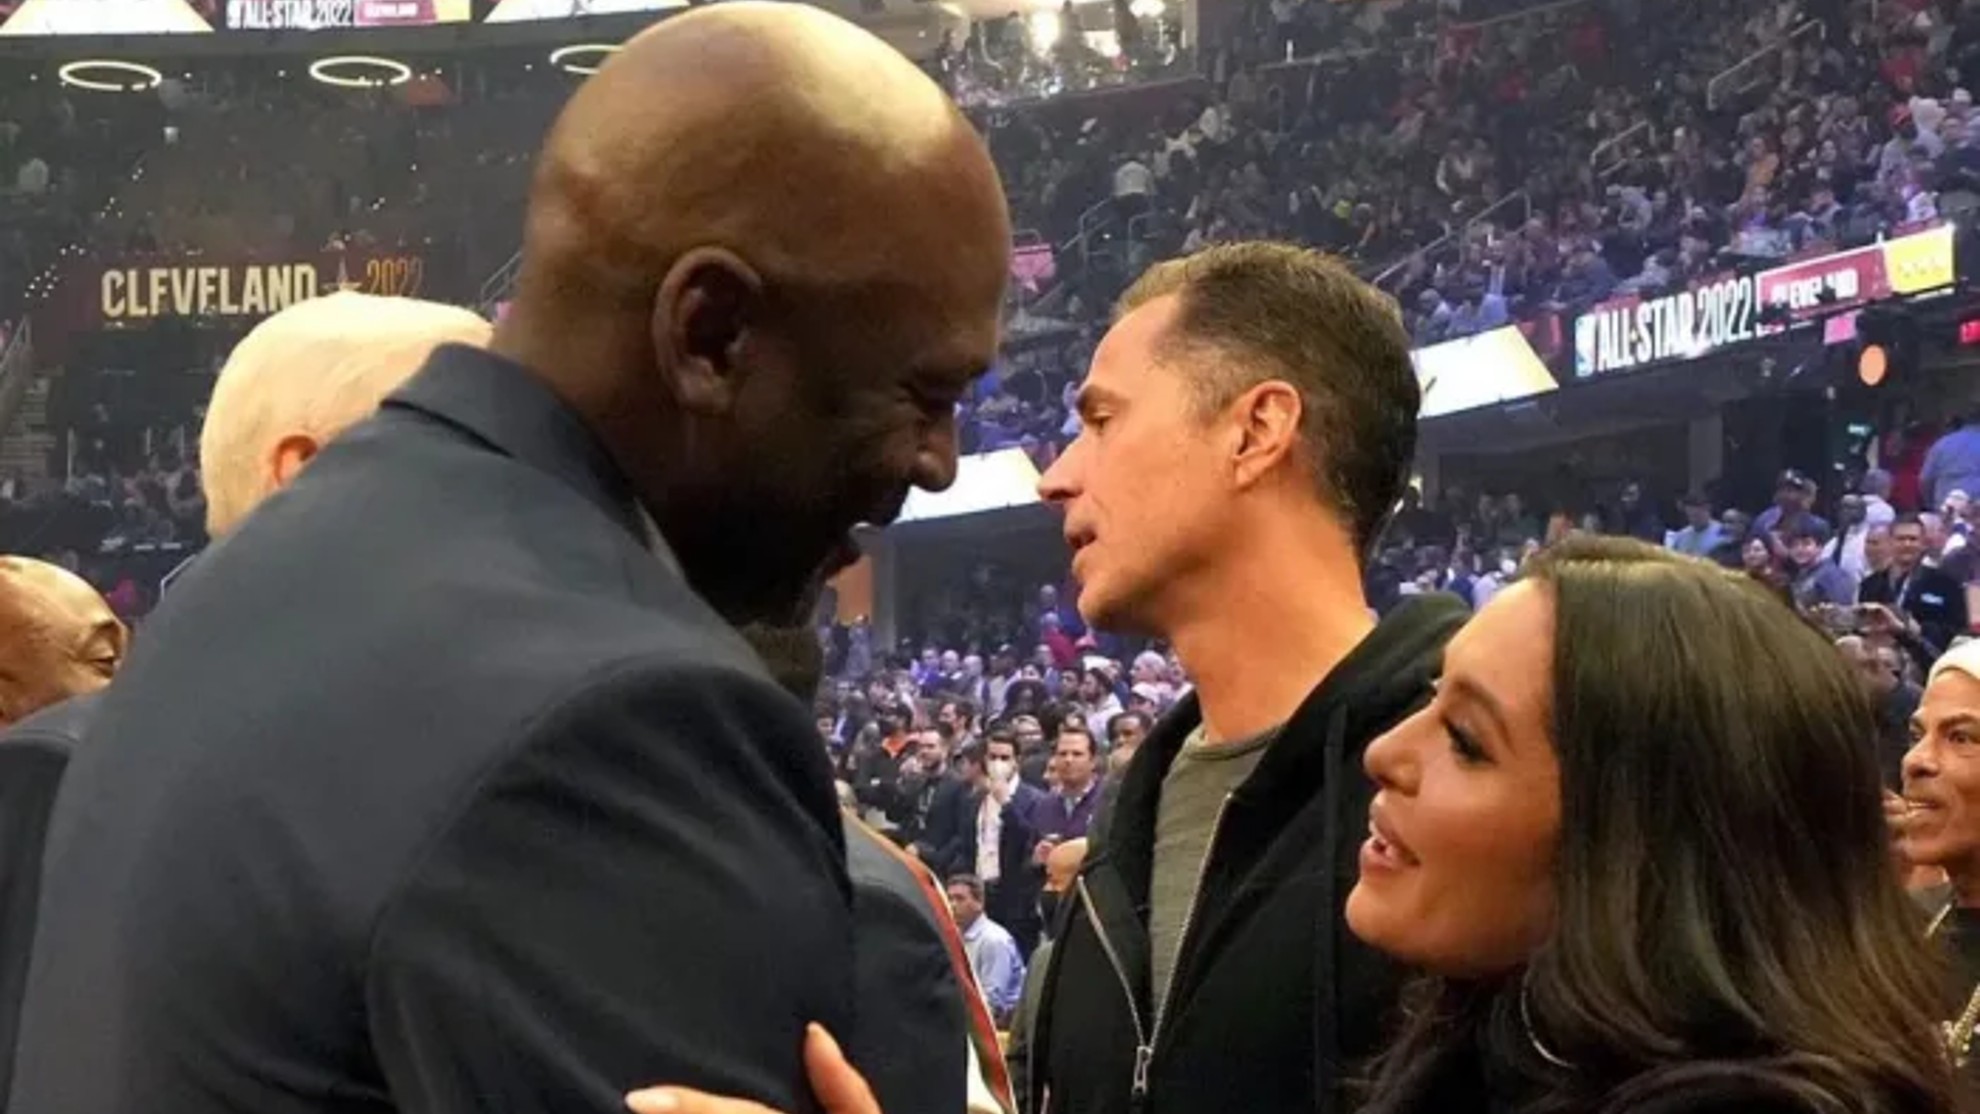 Imagen en la que Michael Jordan se acercó a saludar a Vanessa Bryant, antes de darla un sentido abrazo.